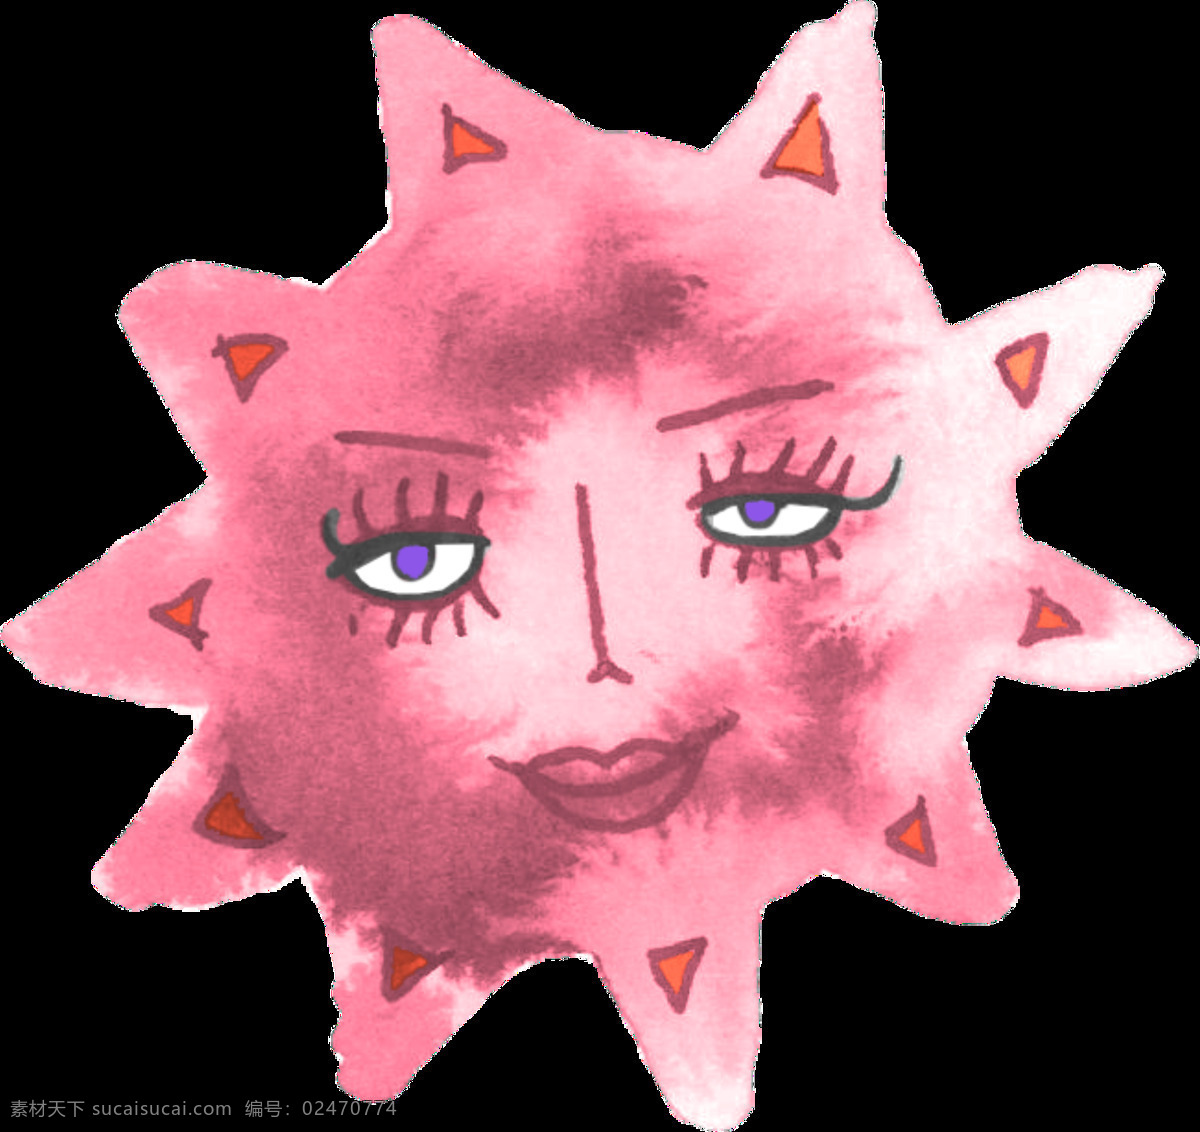 手绘太阳素材 手绘 粉色 人脸 太阳 矢量素材 设计素材